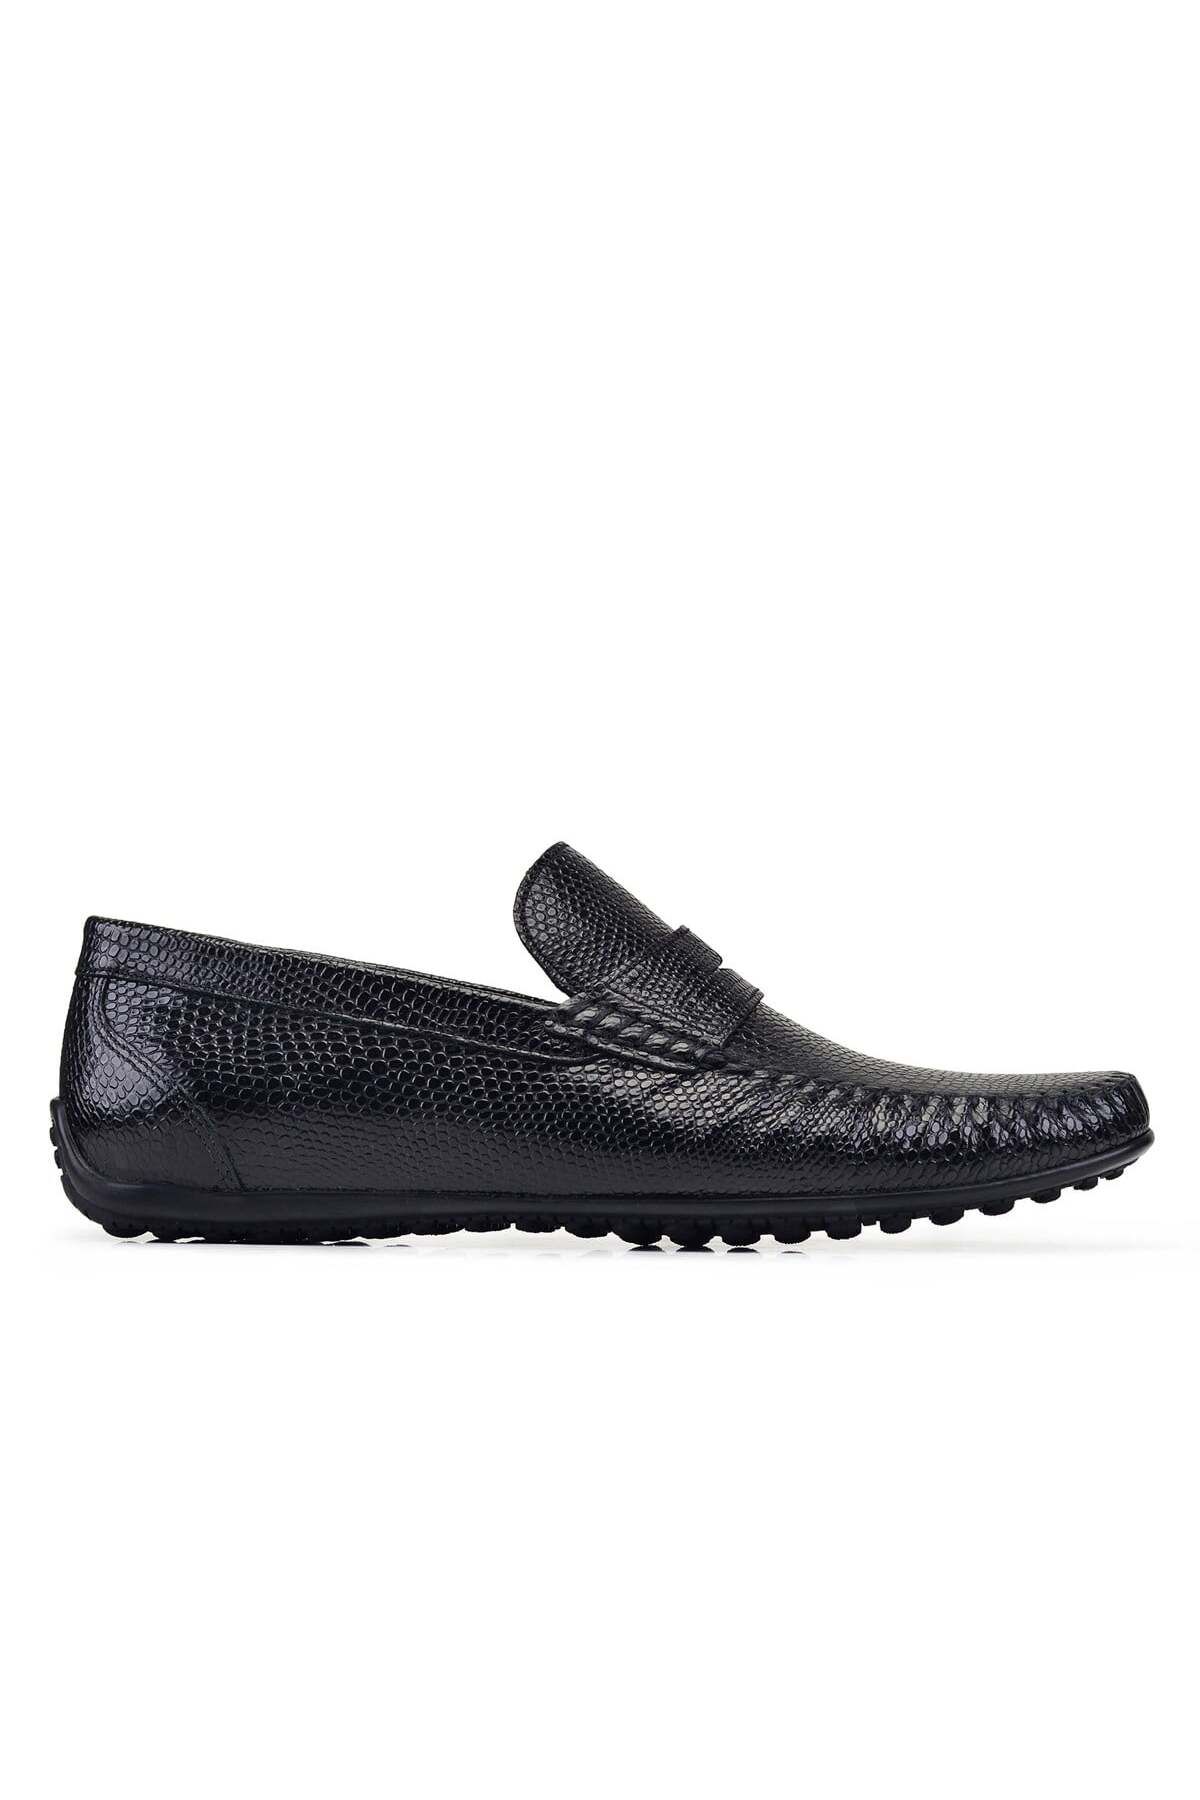 Nevzat Onay Siyah Yazlık Loafer Erkek Ayakkabı -22929-